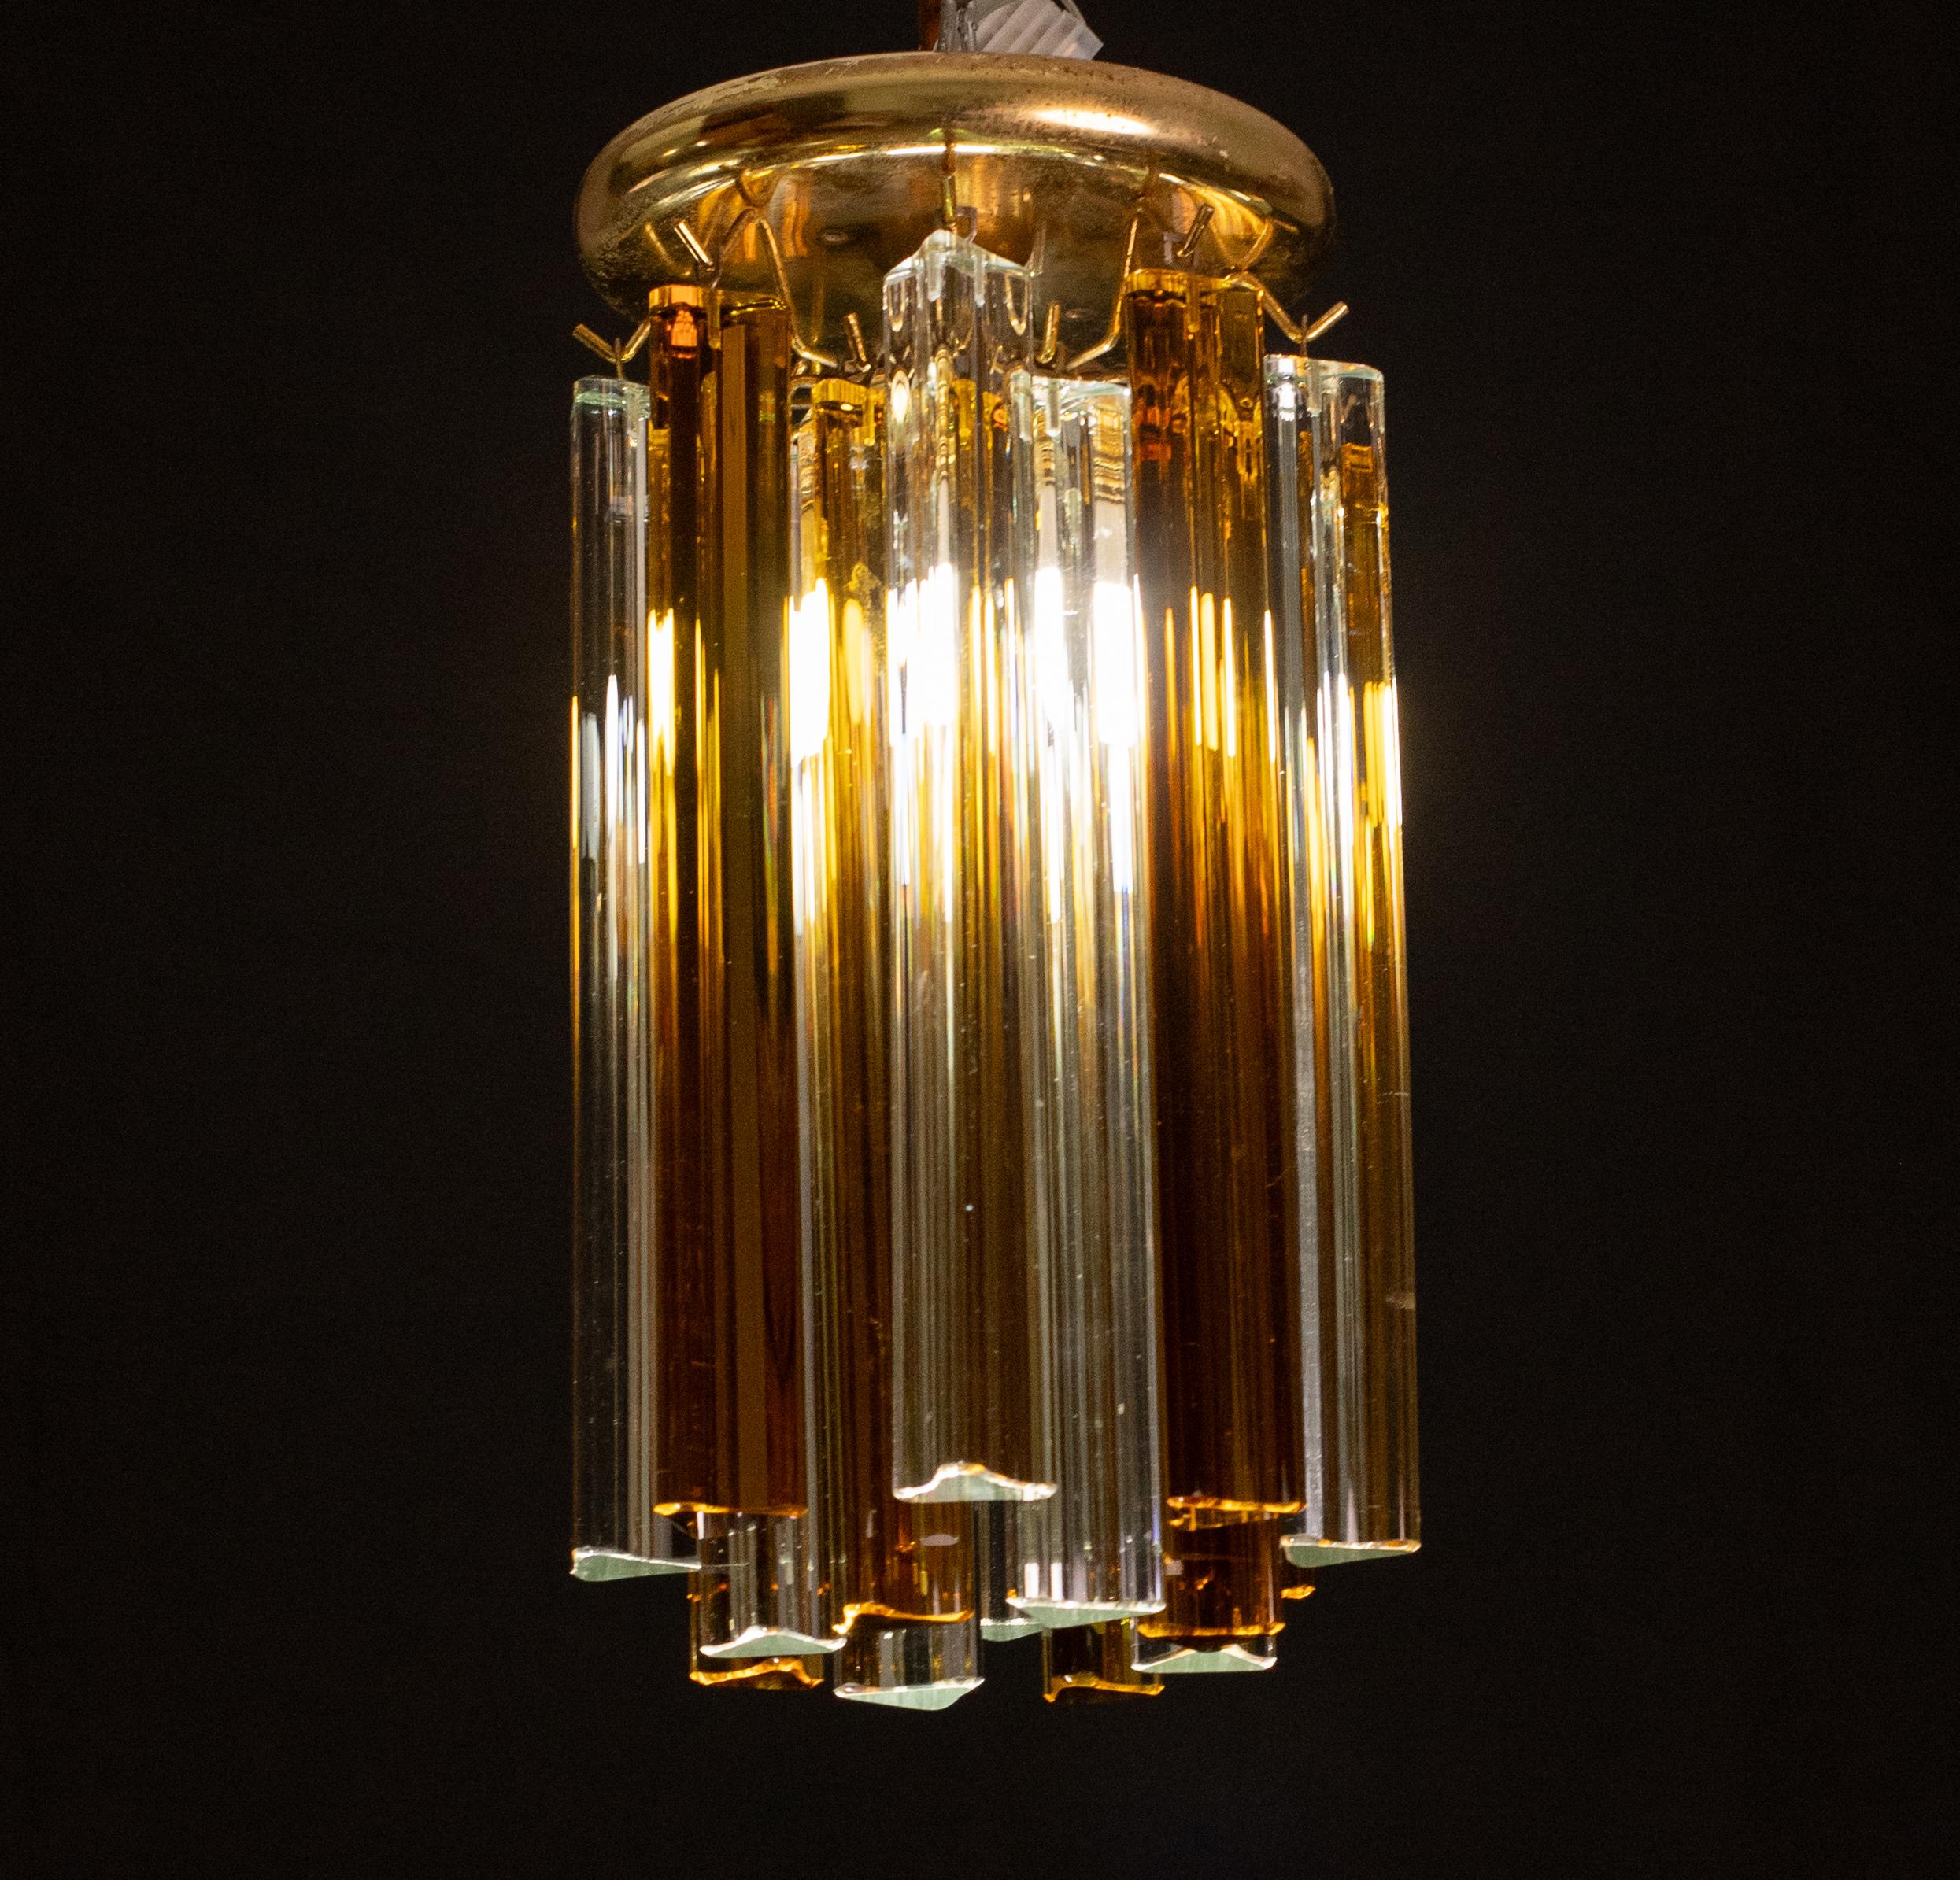 Superbes lampes de plafond attribuées à Venini formées d'ambre tryri et de trasparent.
monte un luminaire.
Hauteur 23 centimètres, diamètre 30 centimètres.
Période 1960